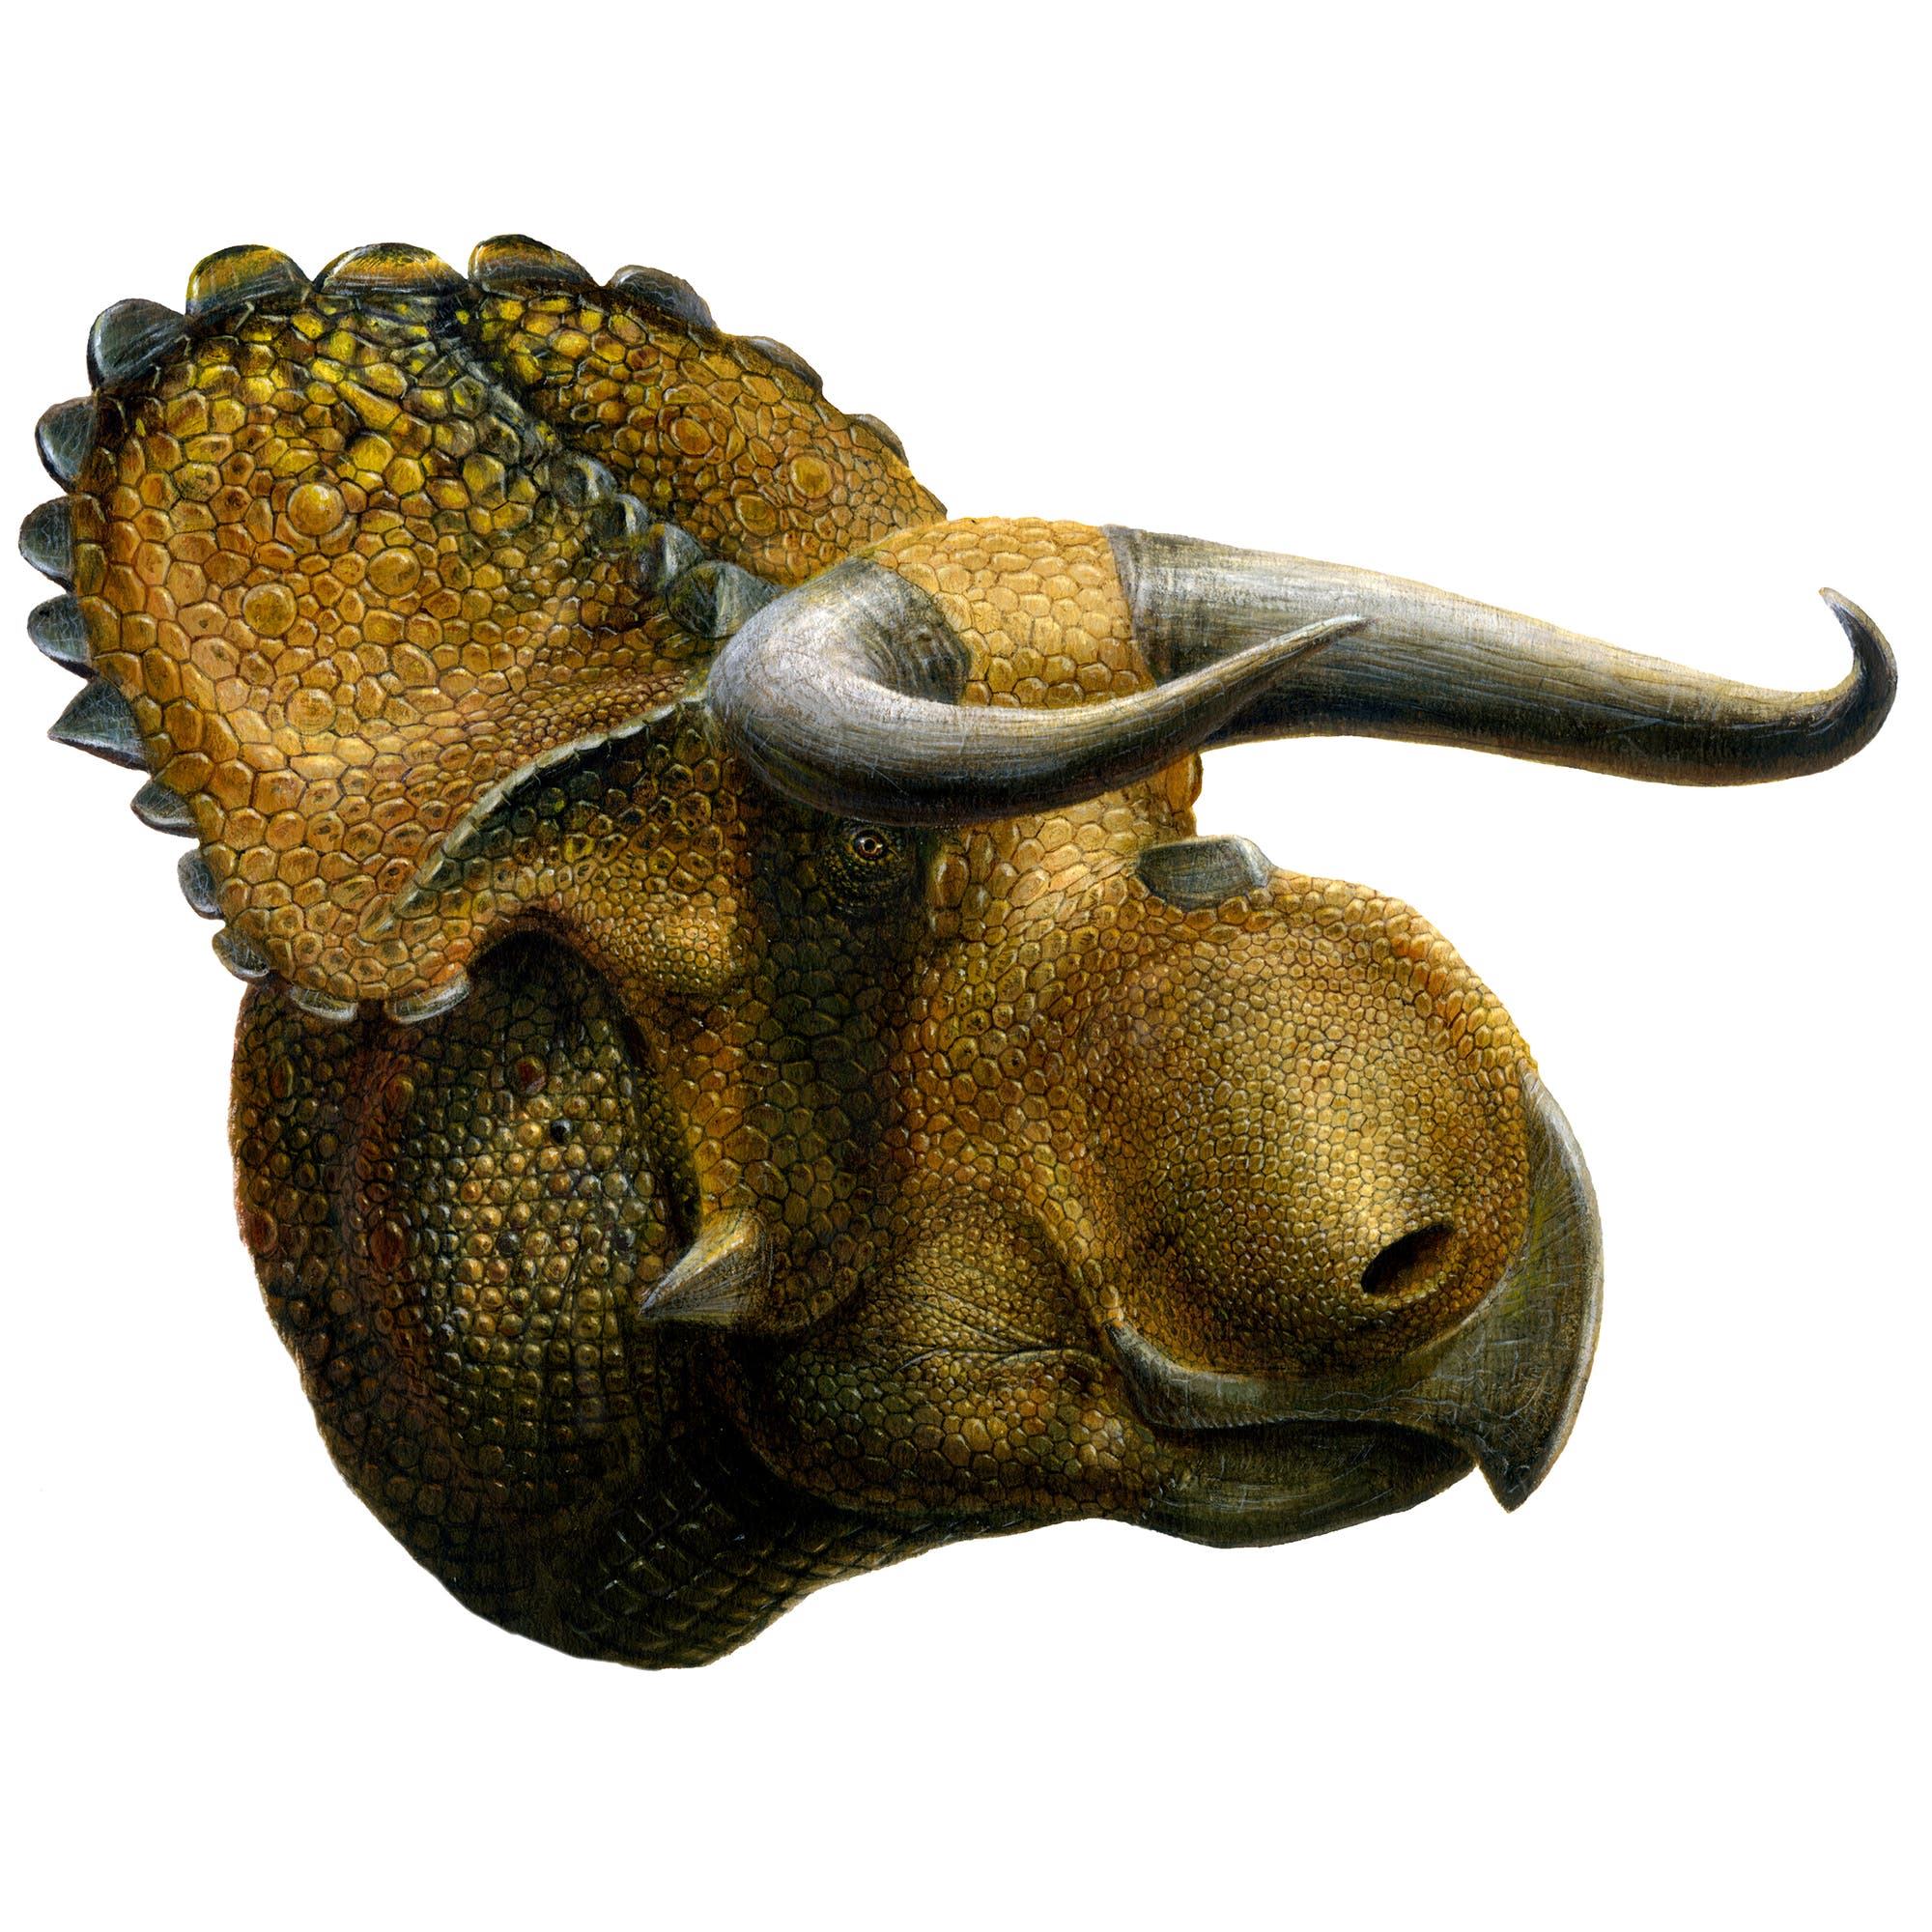 Nasutoceratops titusi